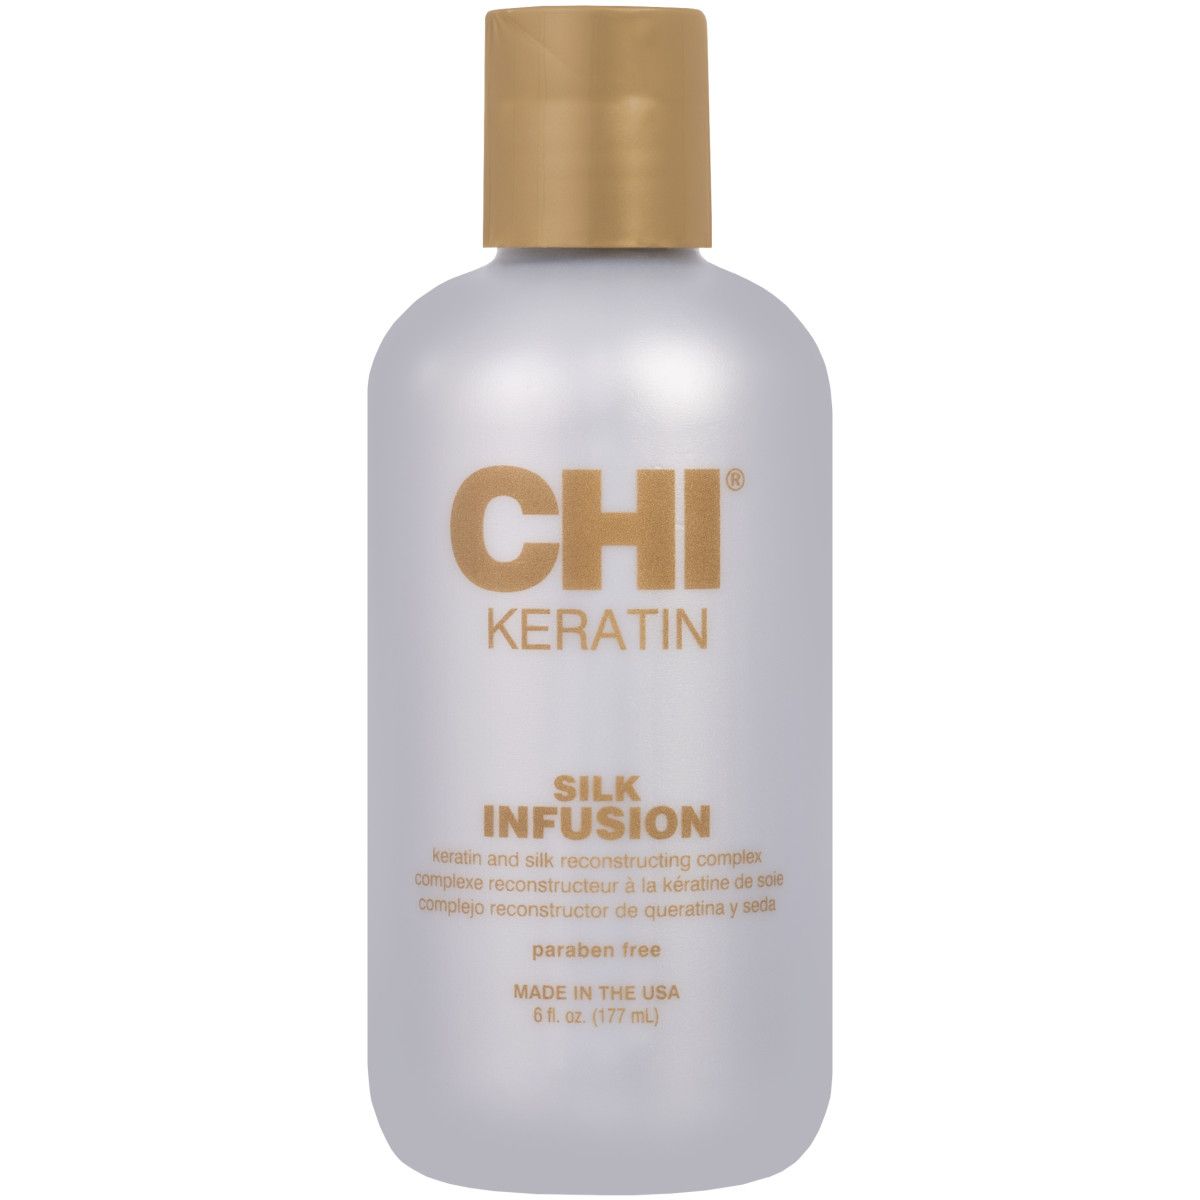 CHI Keratin Silk Infusion - wygładzający jedwab do włosów, 177ml